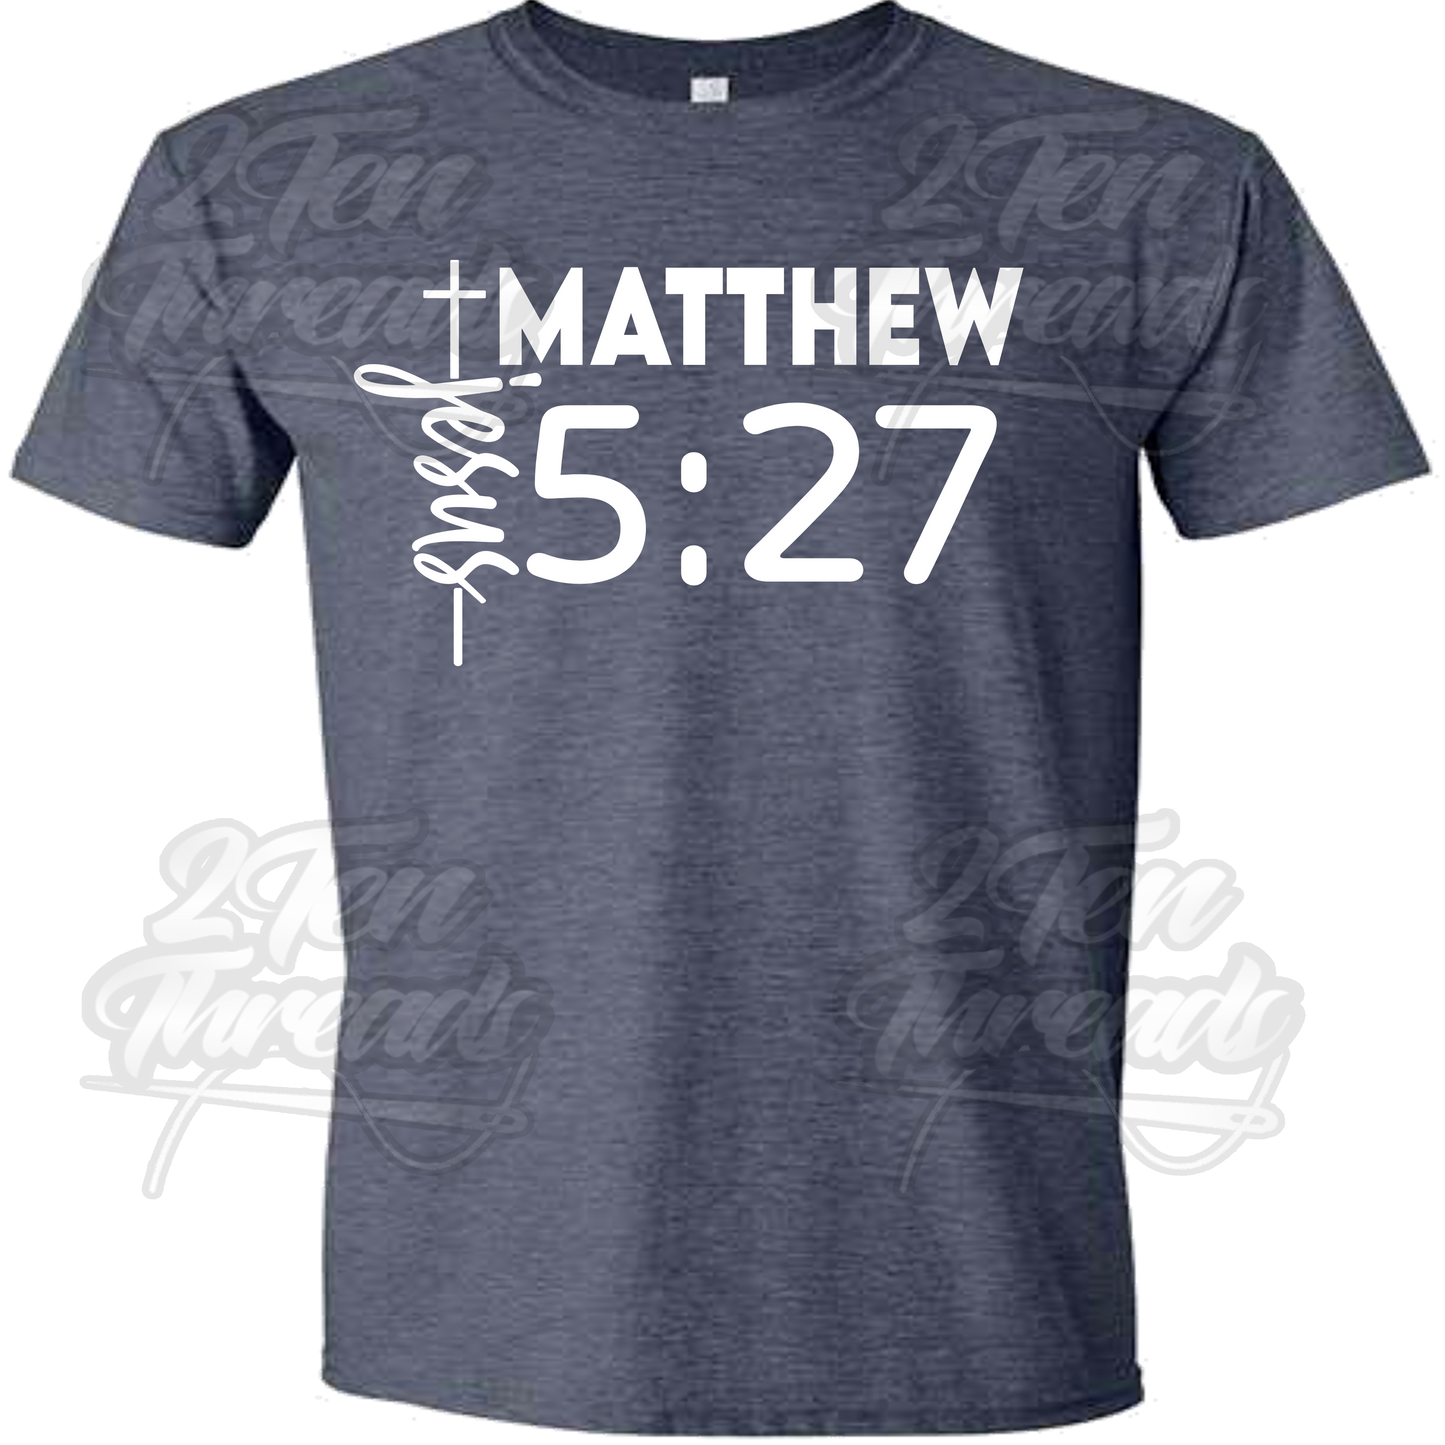 Matthew 5:27 Shirt